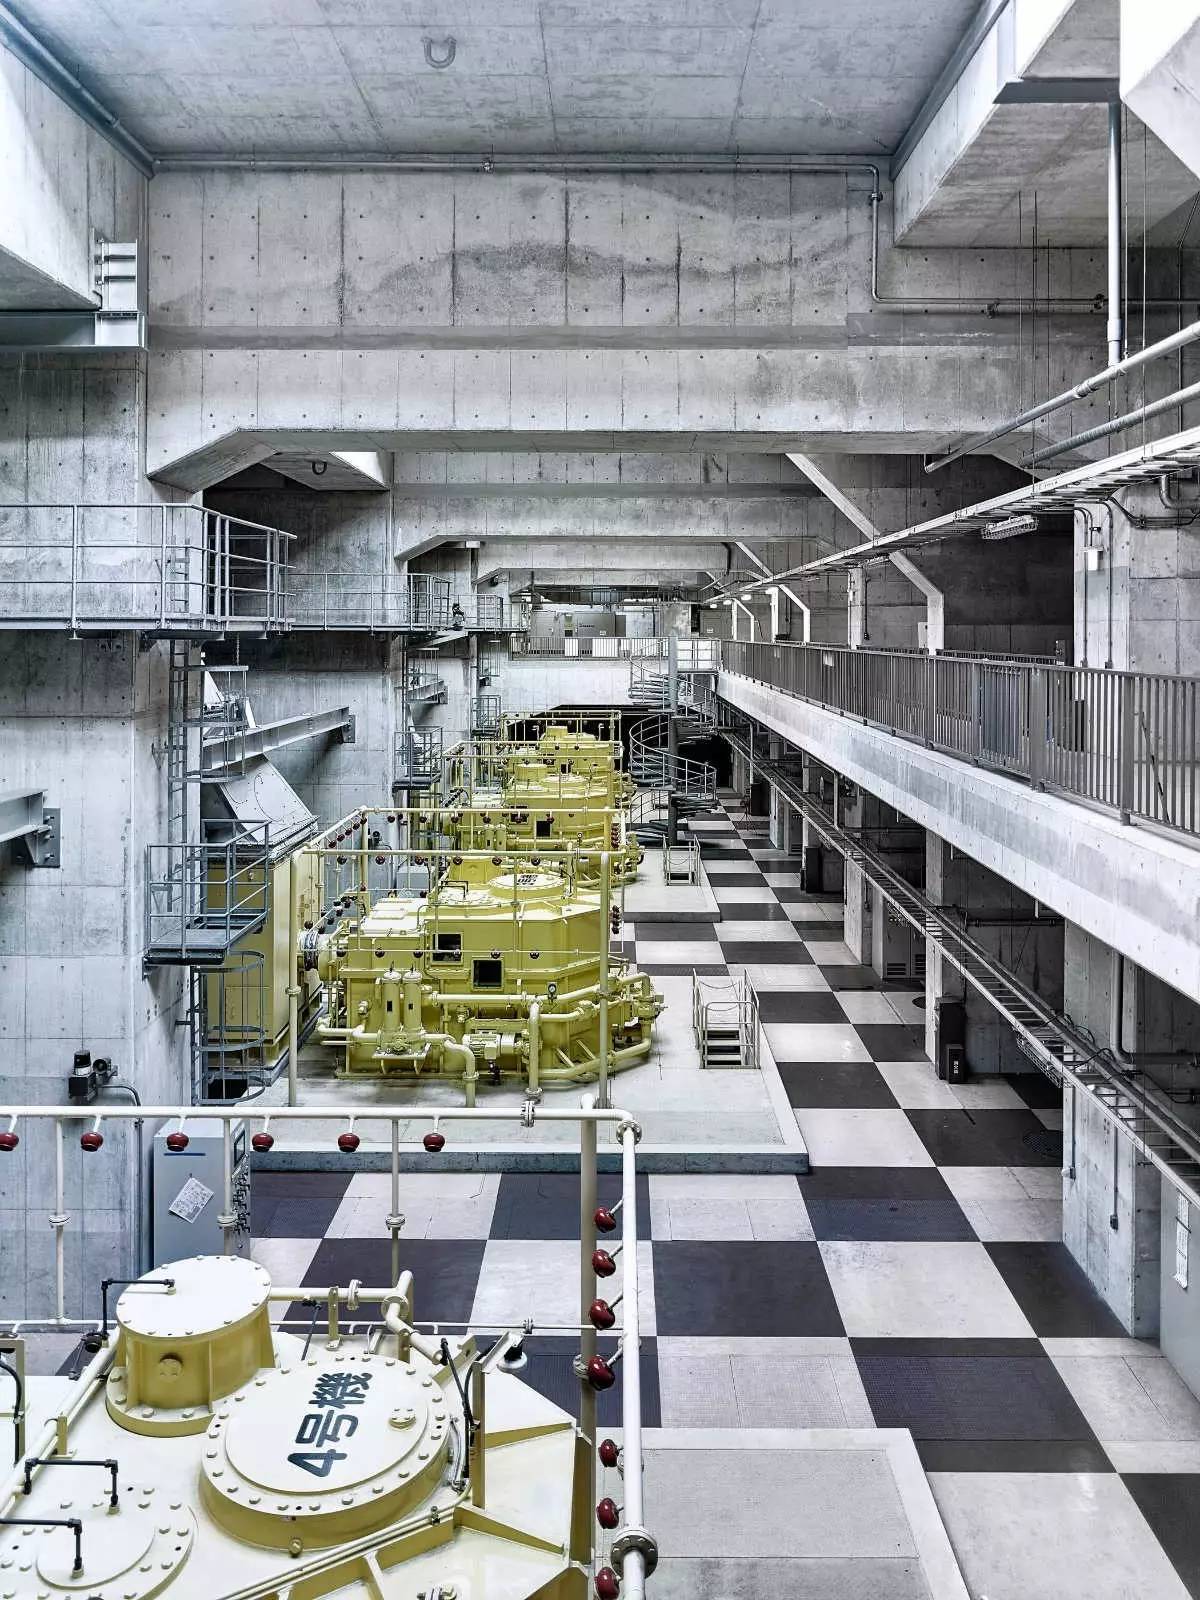 东京 地下神殿 :城市排水系统有种科幻大片的氛